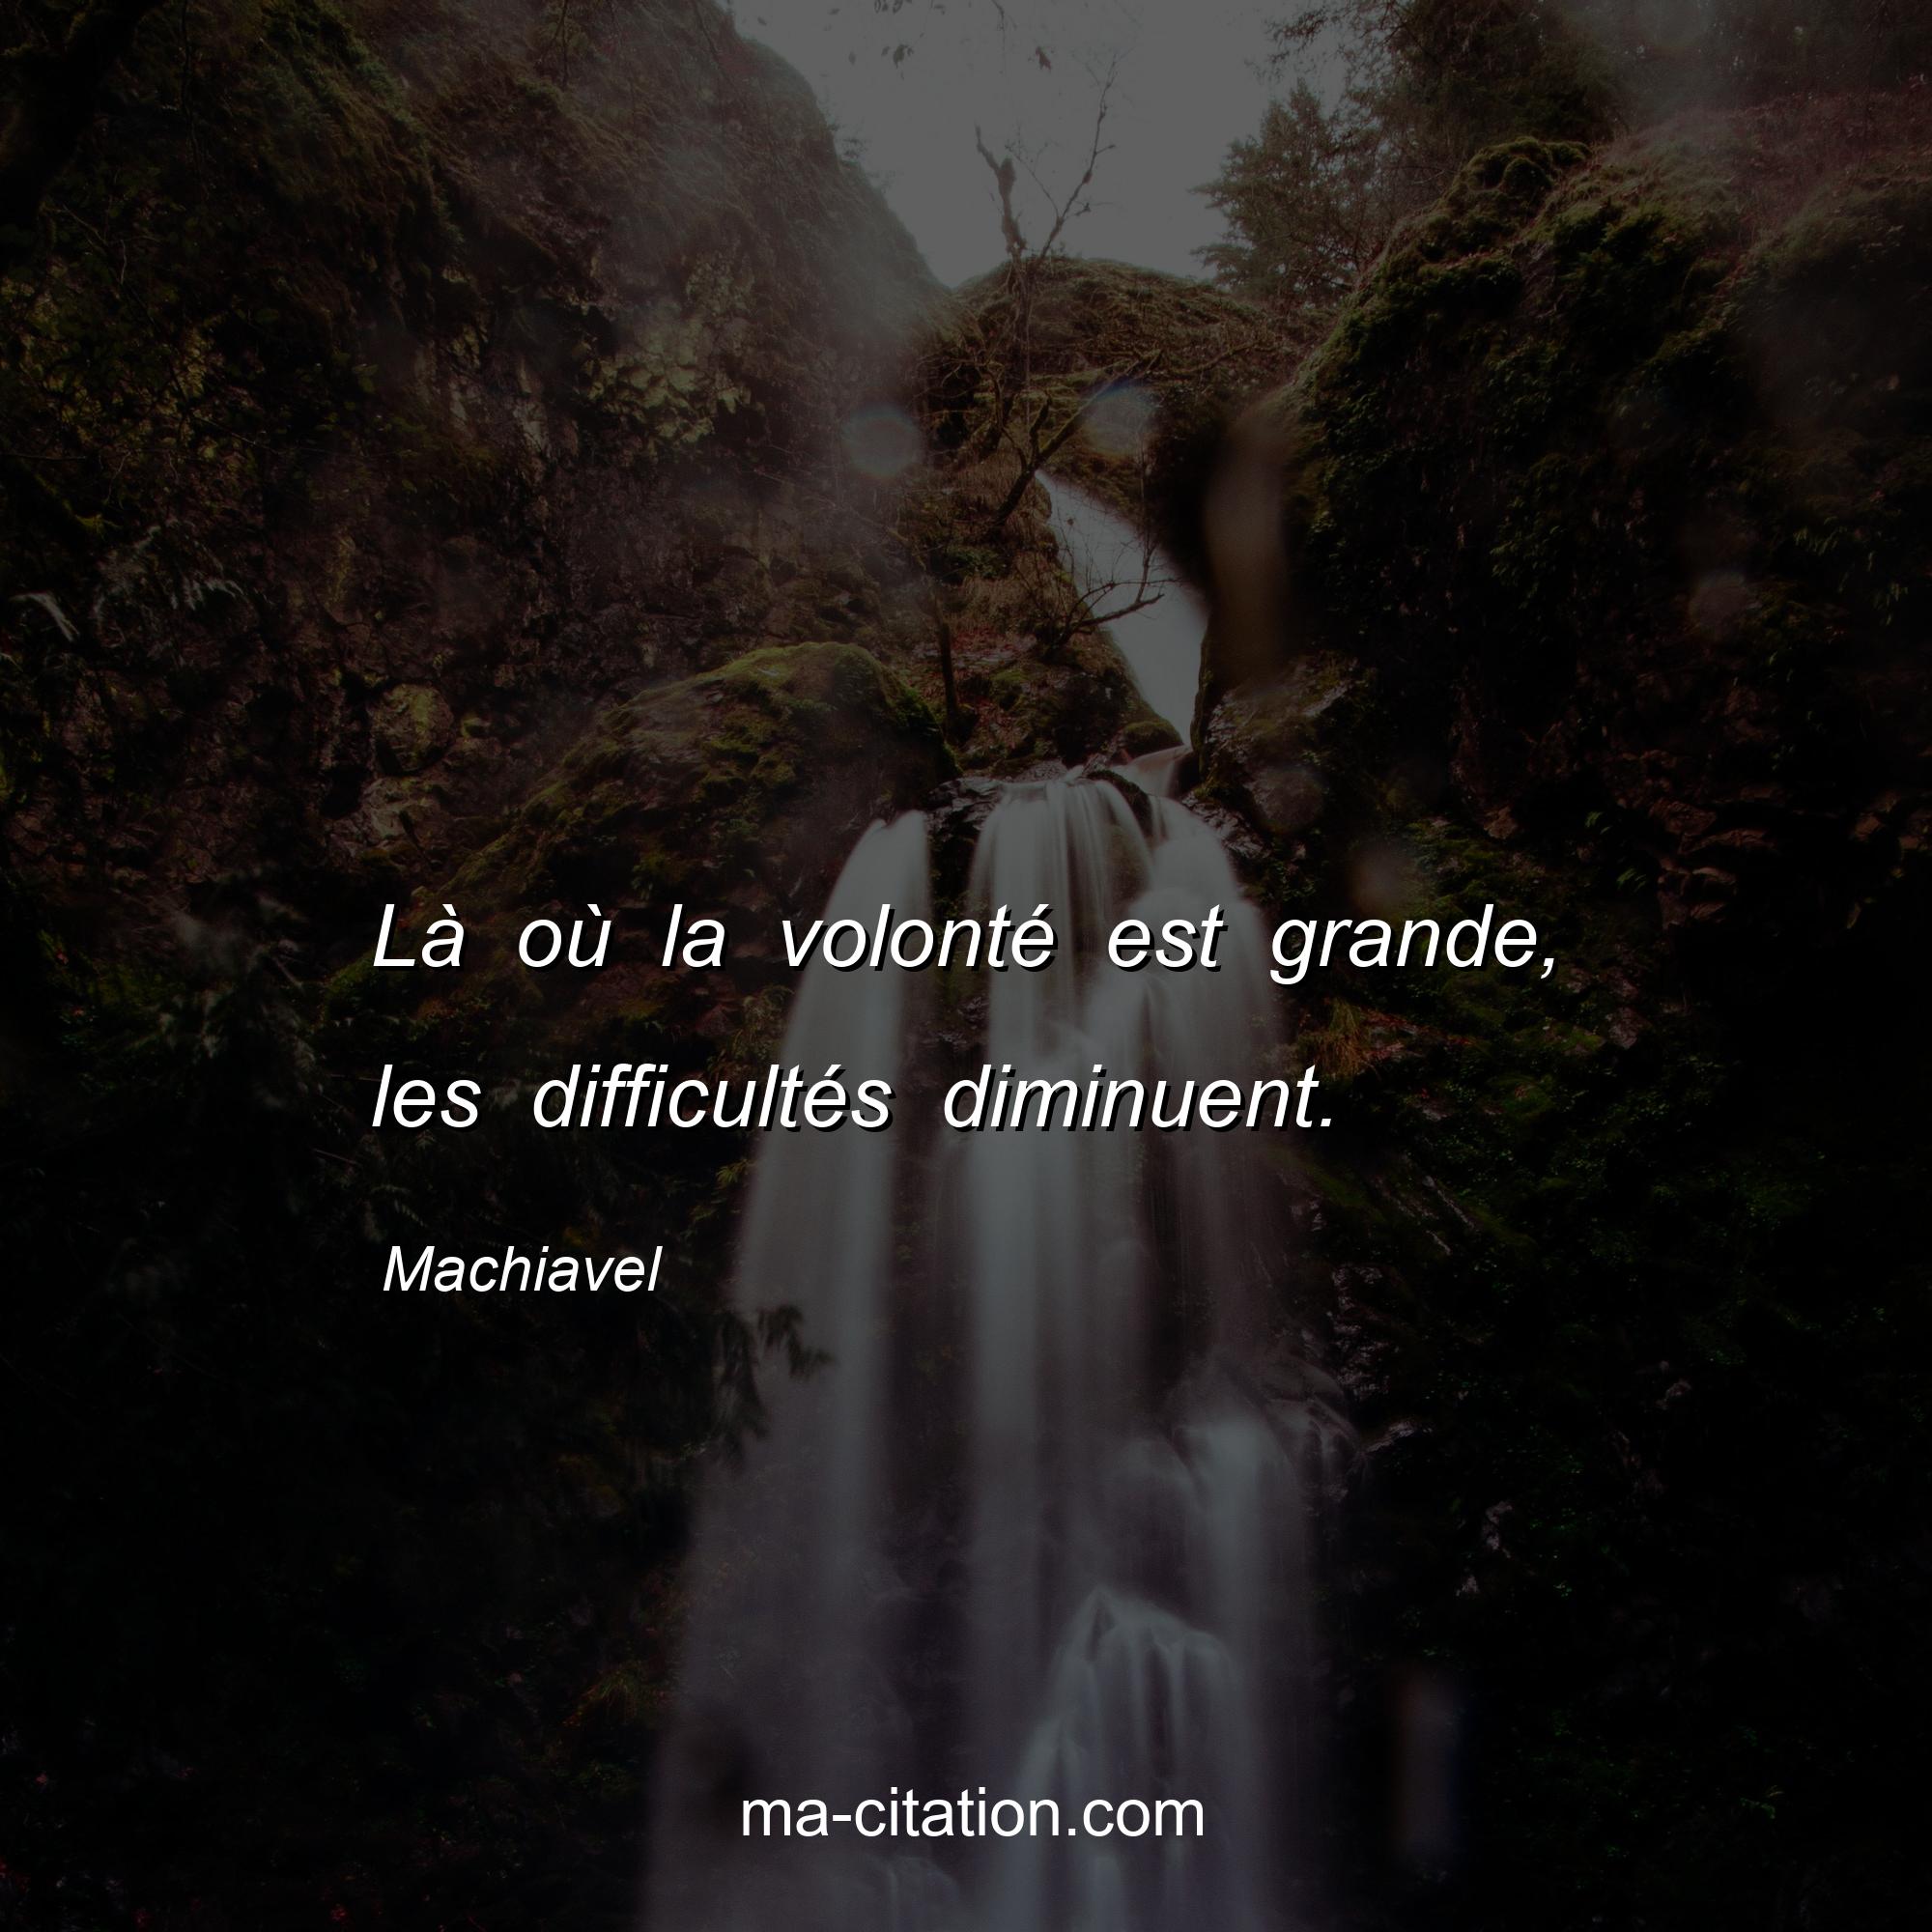 Machiavel : Là où la volonté est grande, les difficultés diminuent.